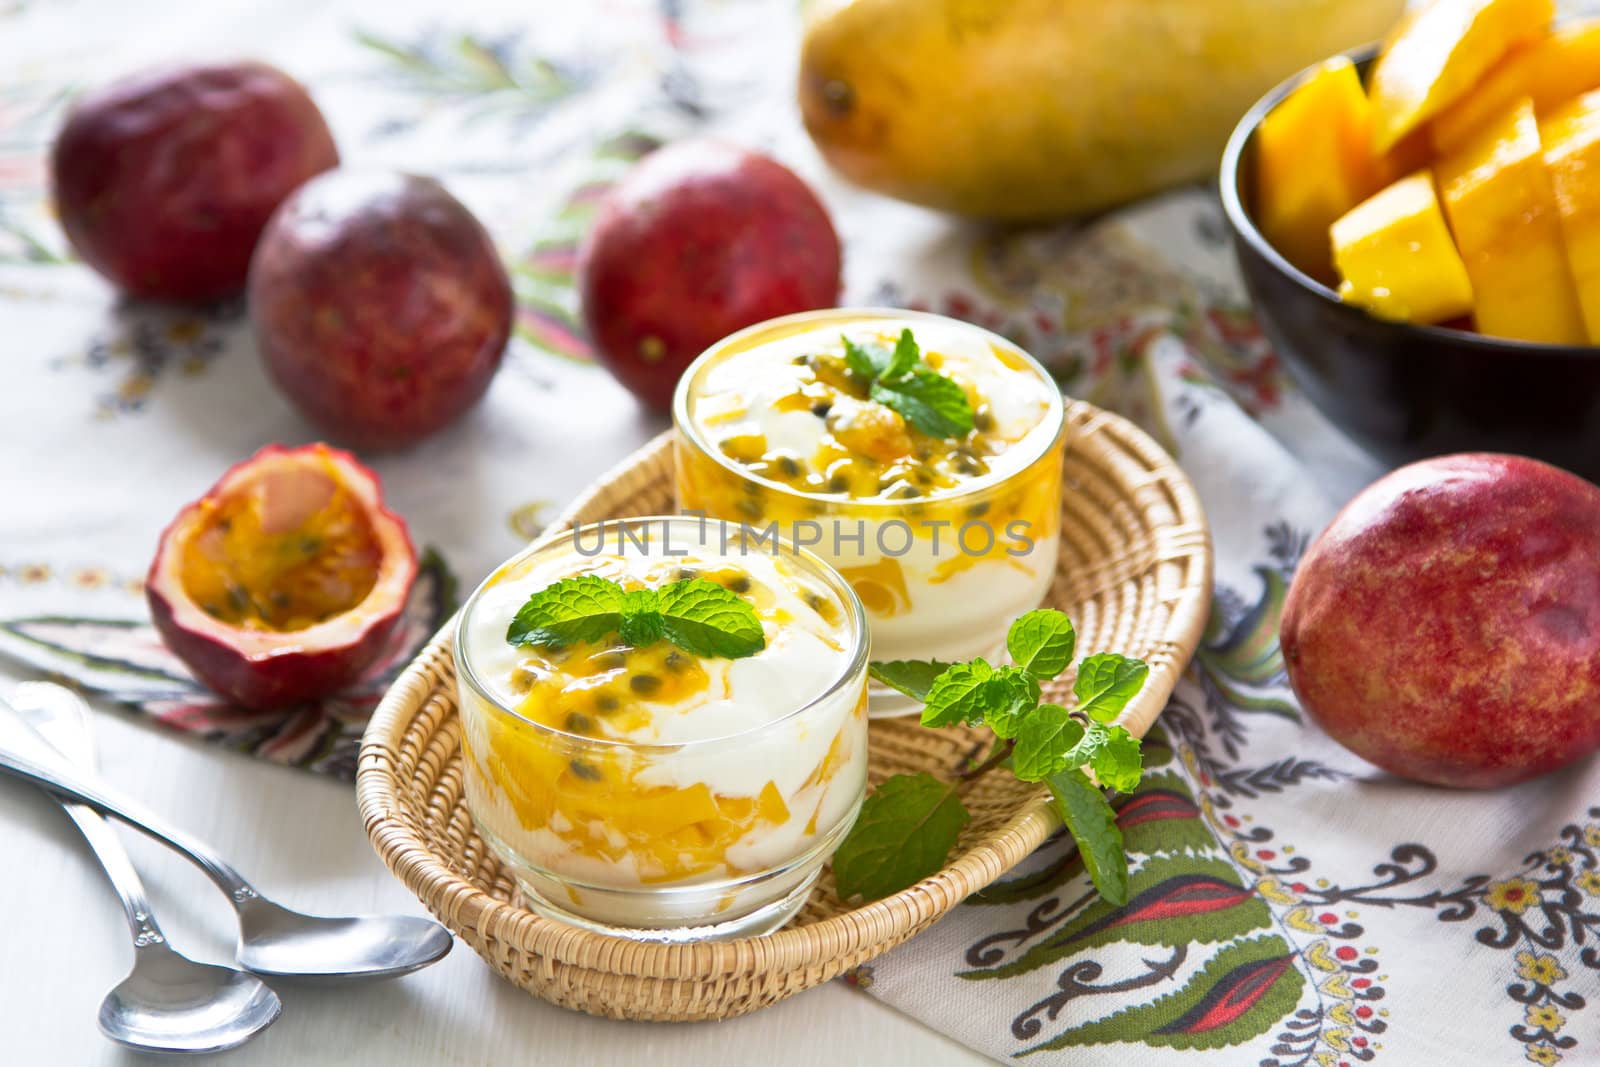 Fresh Passion fruit and Mango with yogurt